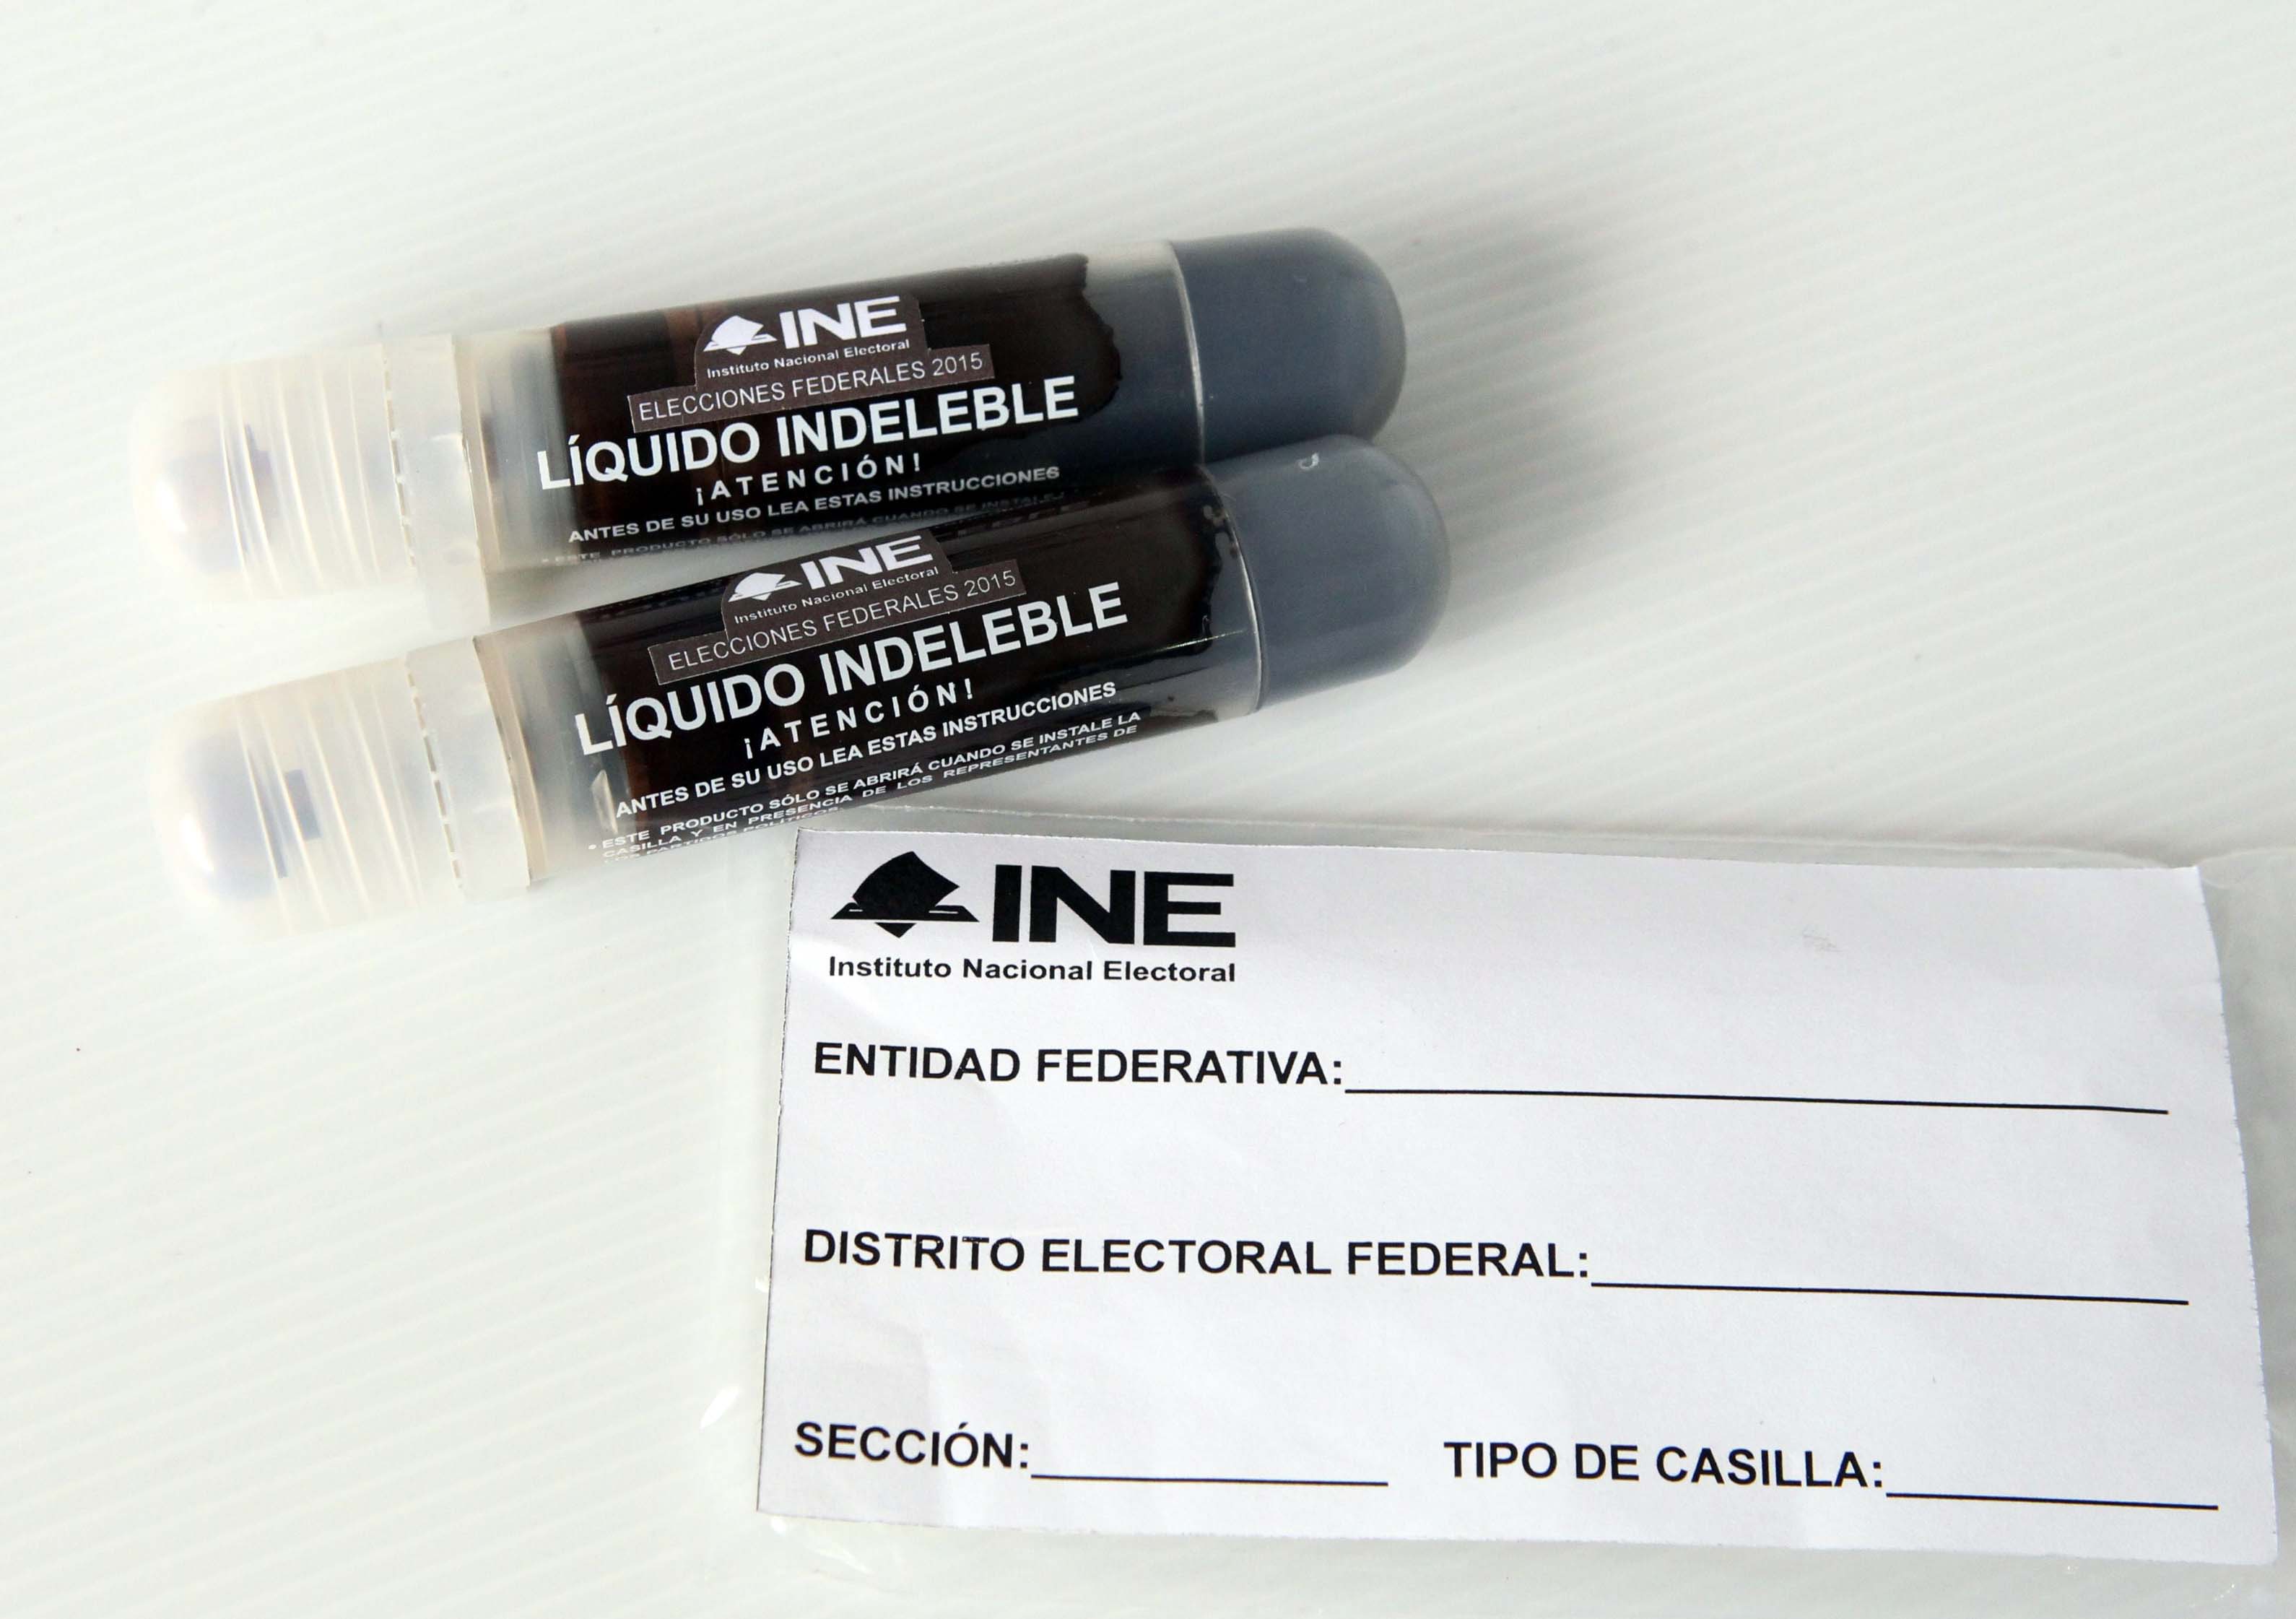 La UAM certifica tinta indeleble que se utilizará en la jornada electoral. Foto: Internet.